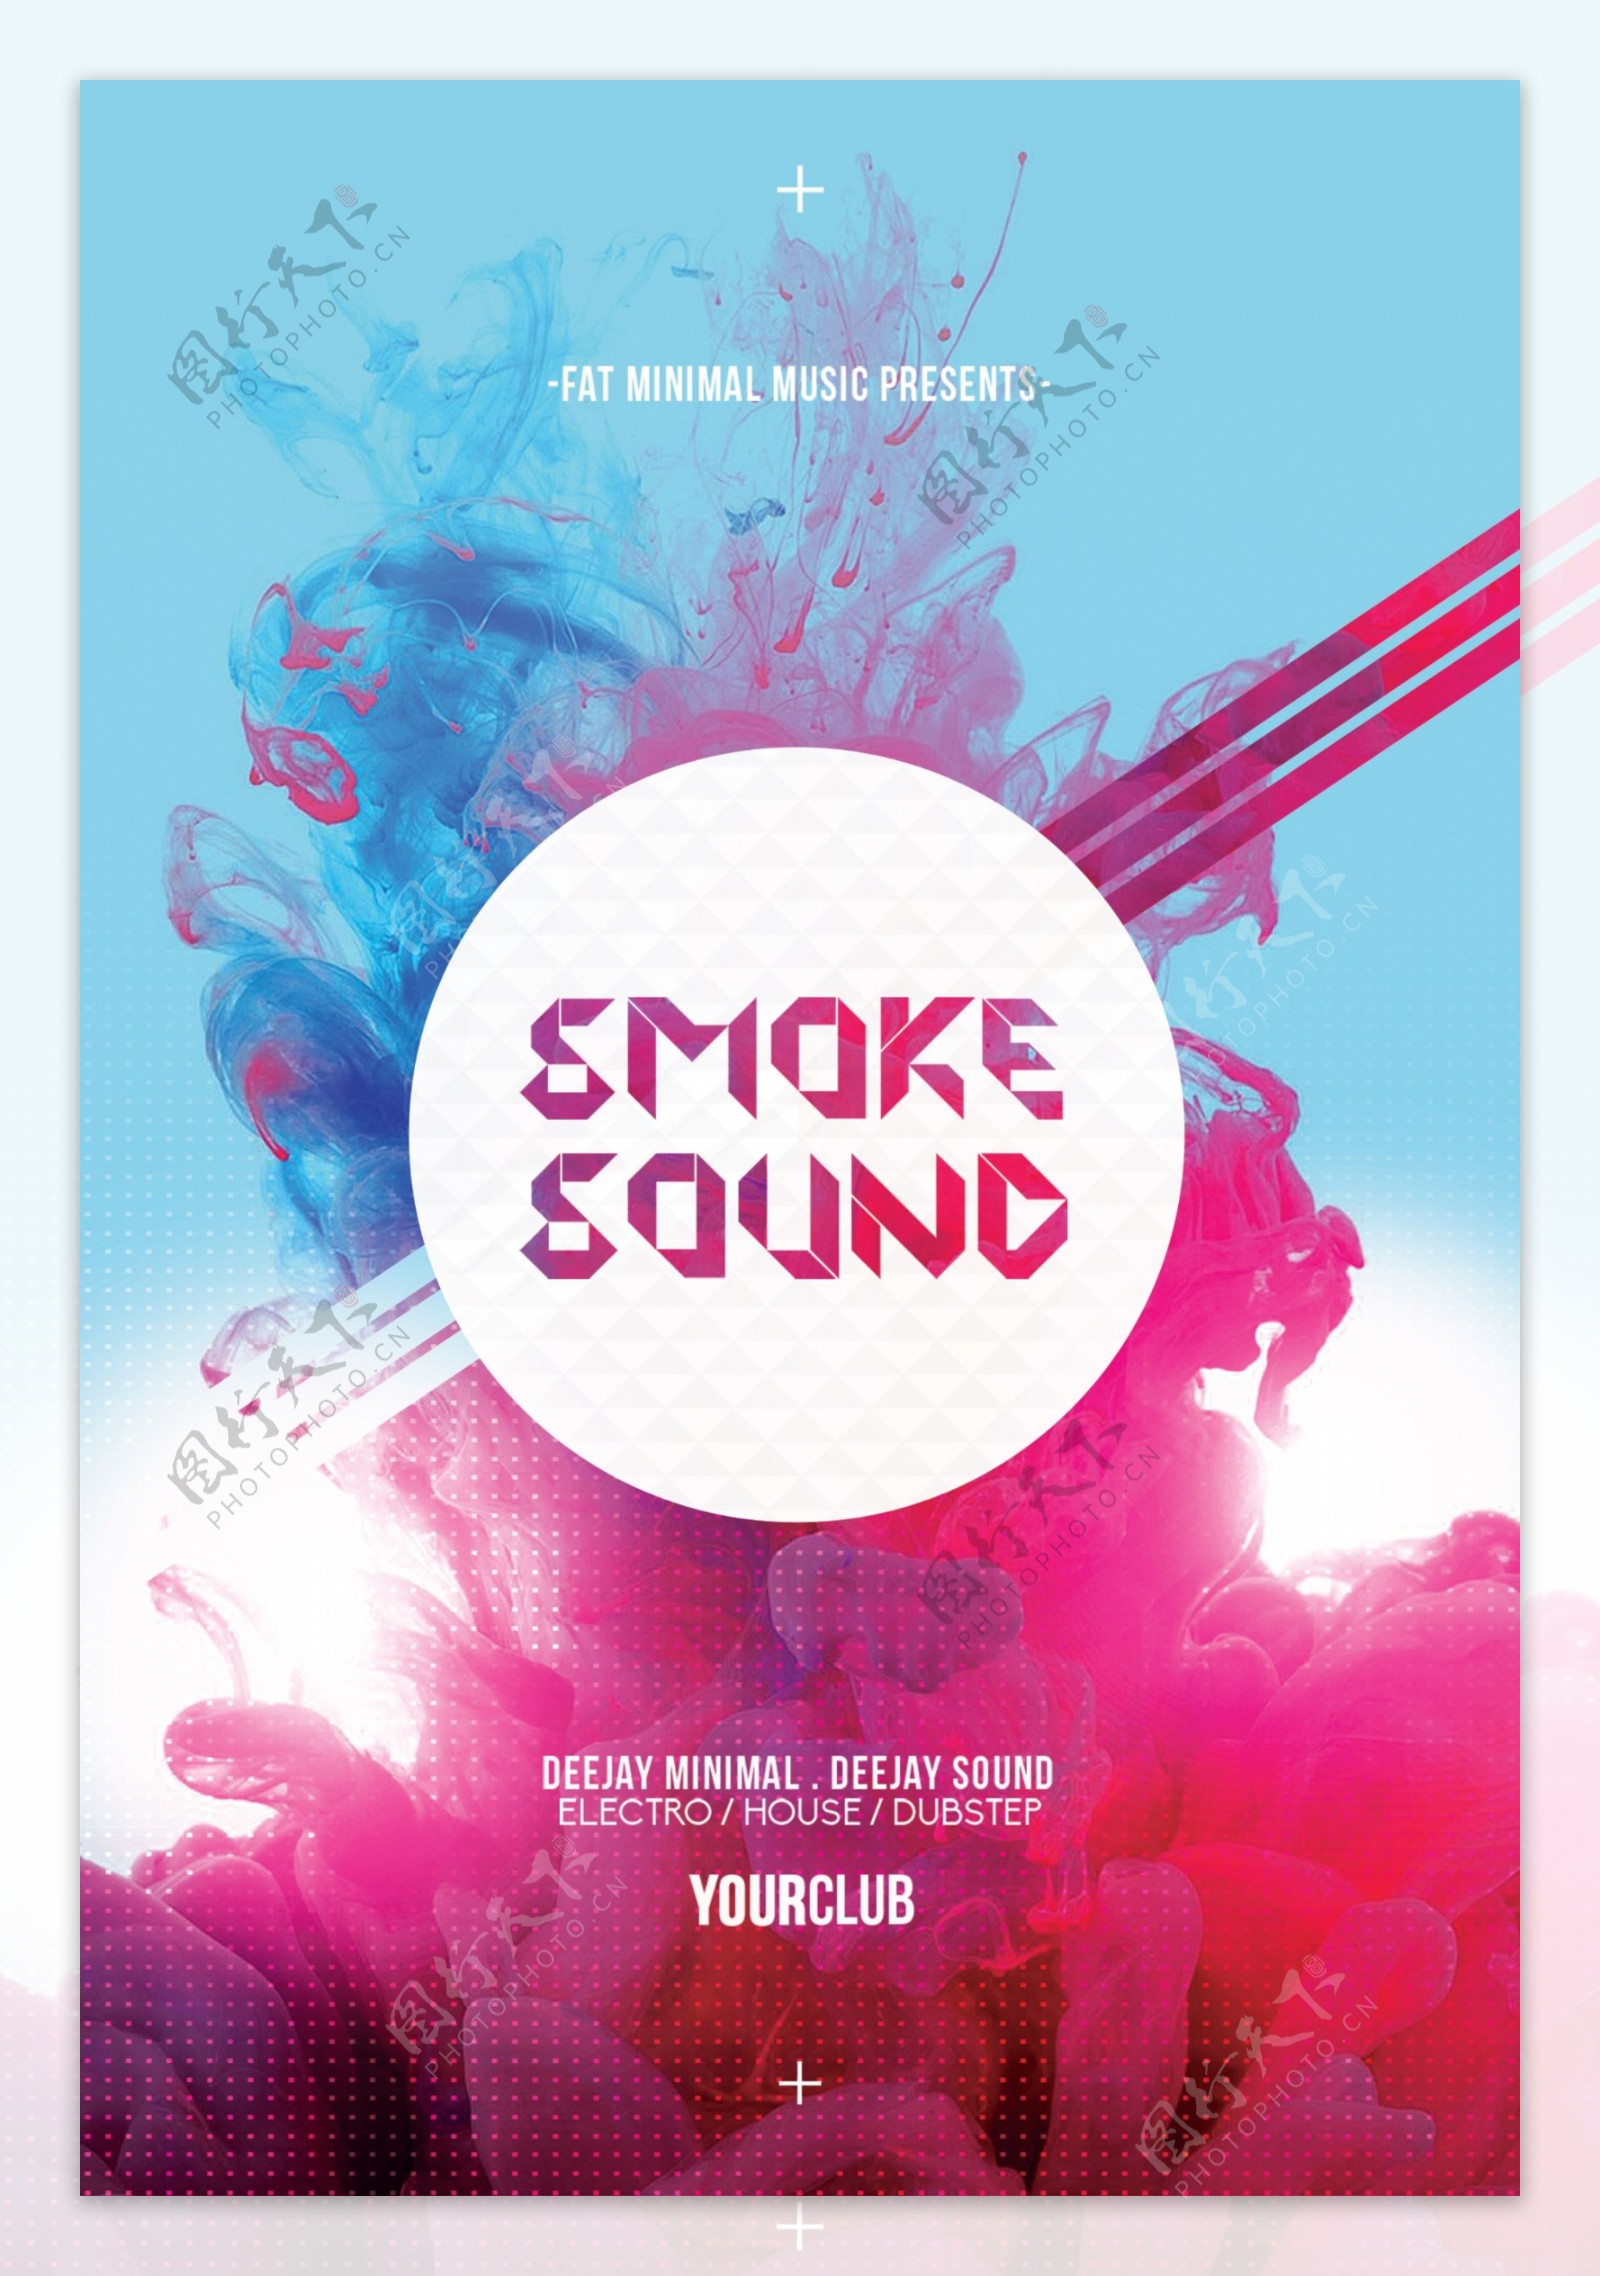 彩色烟雾背景板酒吧海报设计